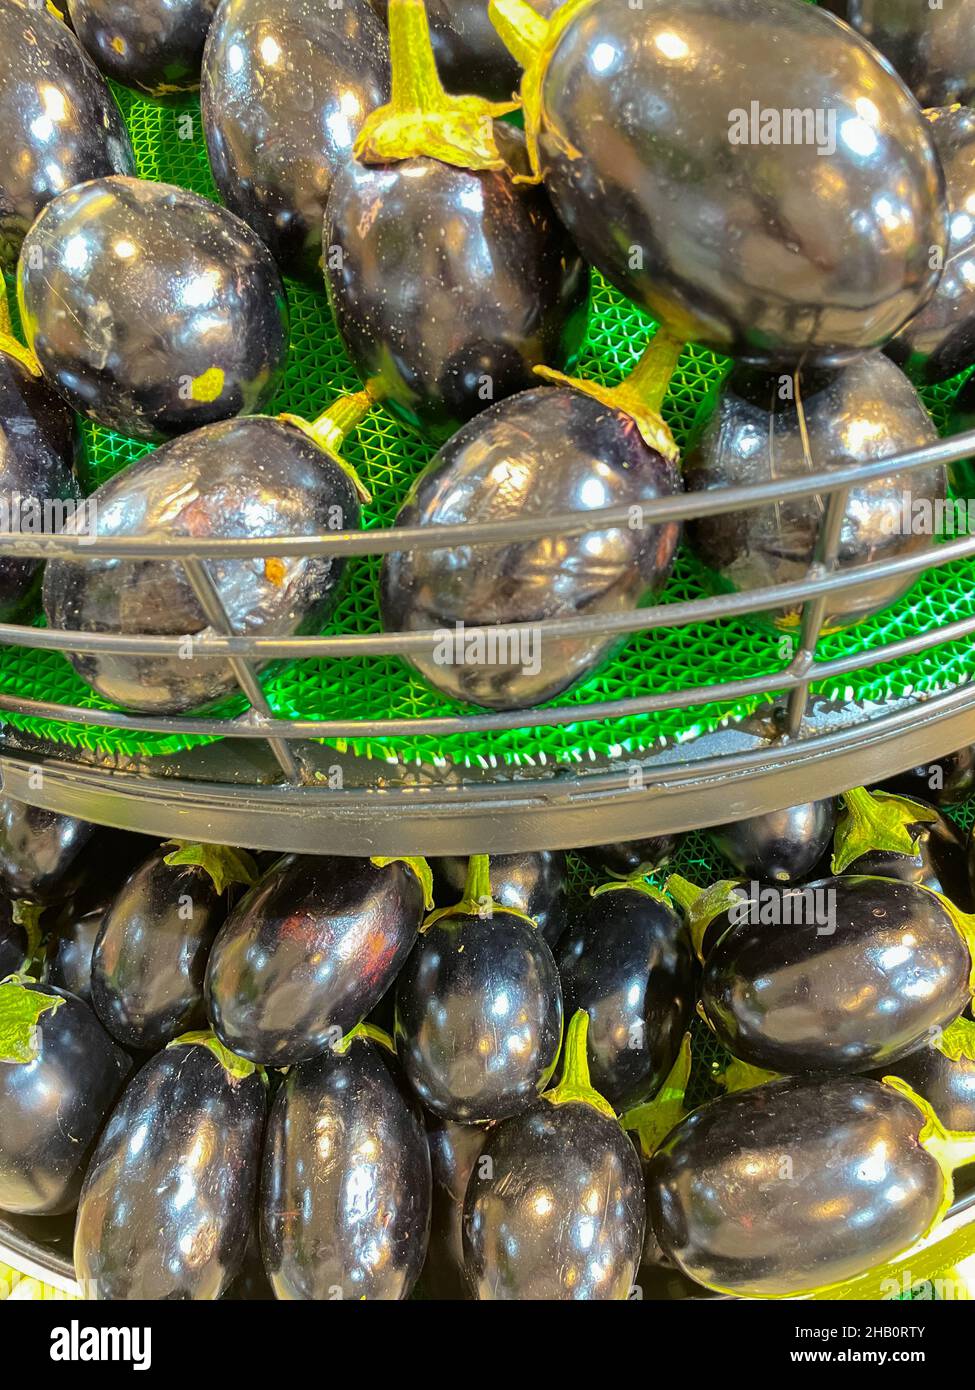 Eggplants freschi biologici chiamato anche Brinjal mantenuto in un cestino in un supermercato Foto Stock